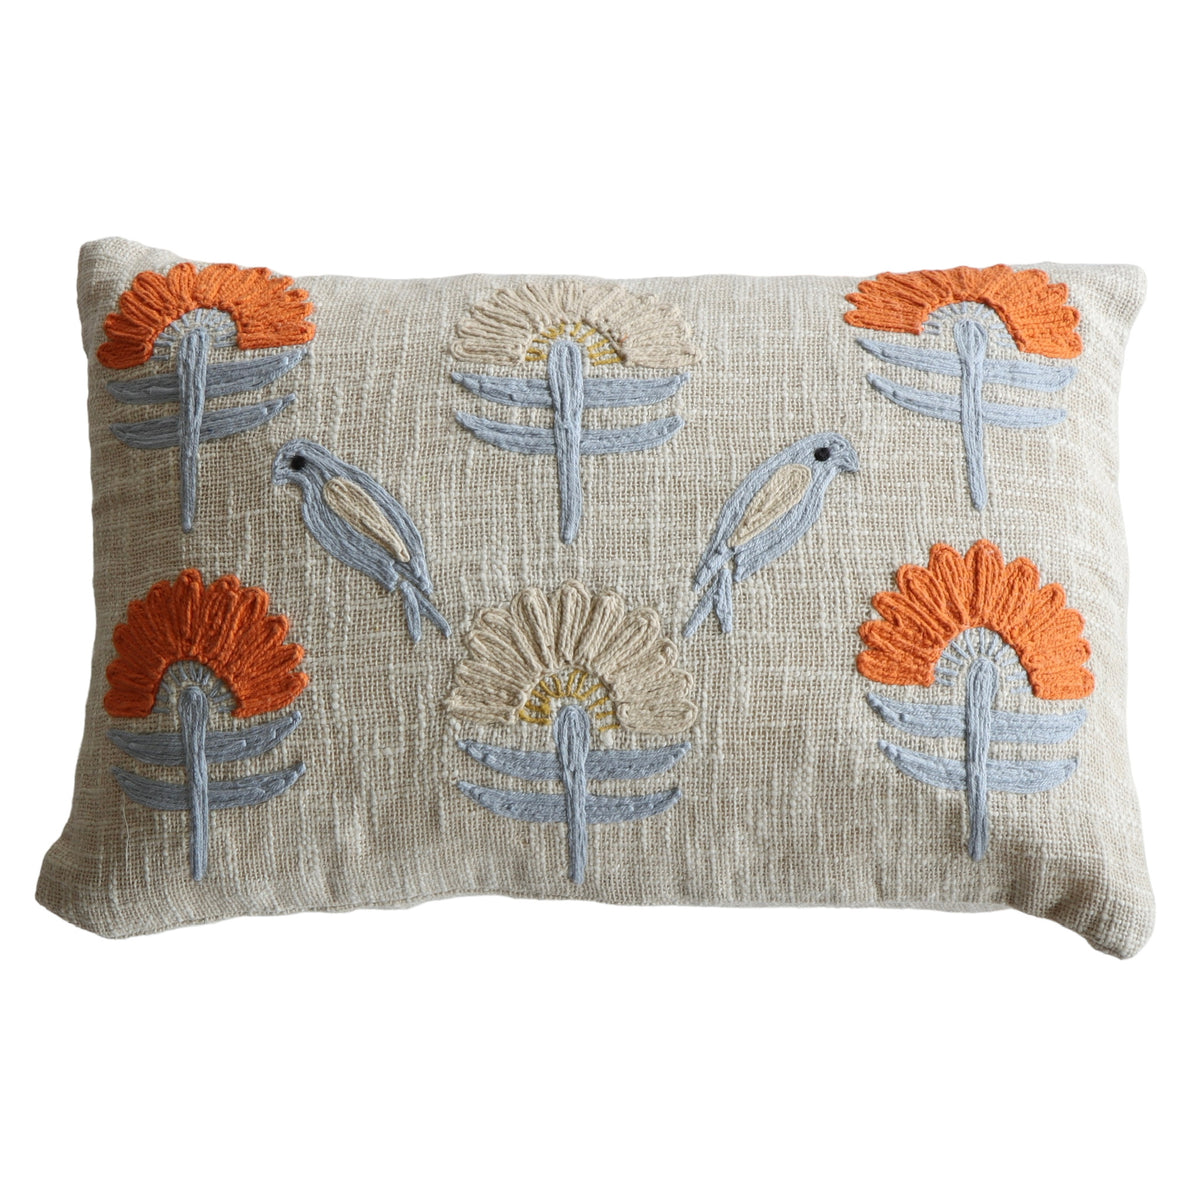 Sunflower Fields Lumbar Pillow - 24x16 - Holistic Habitat 